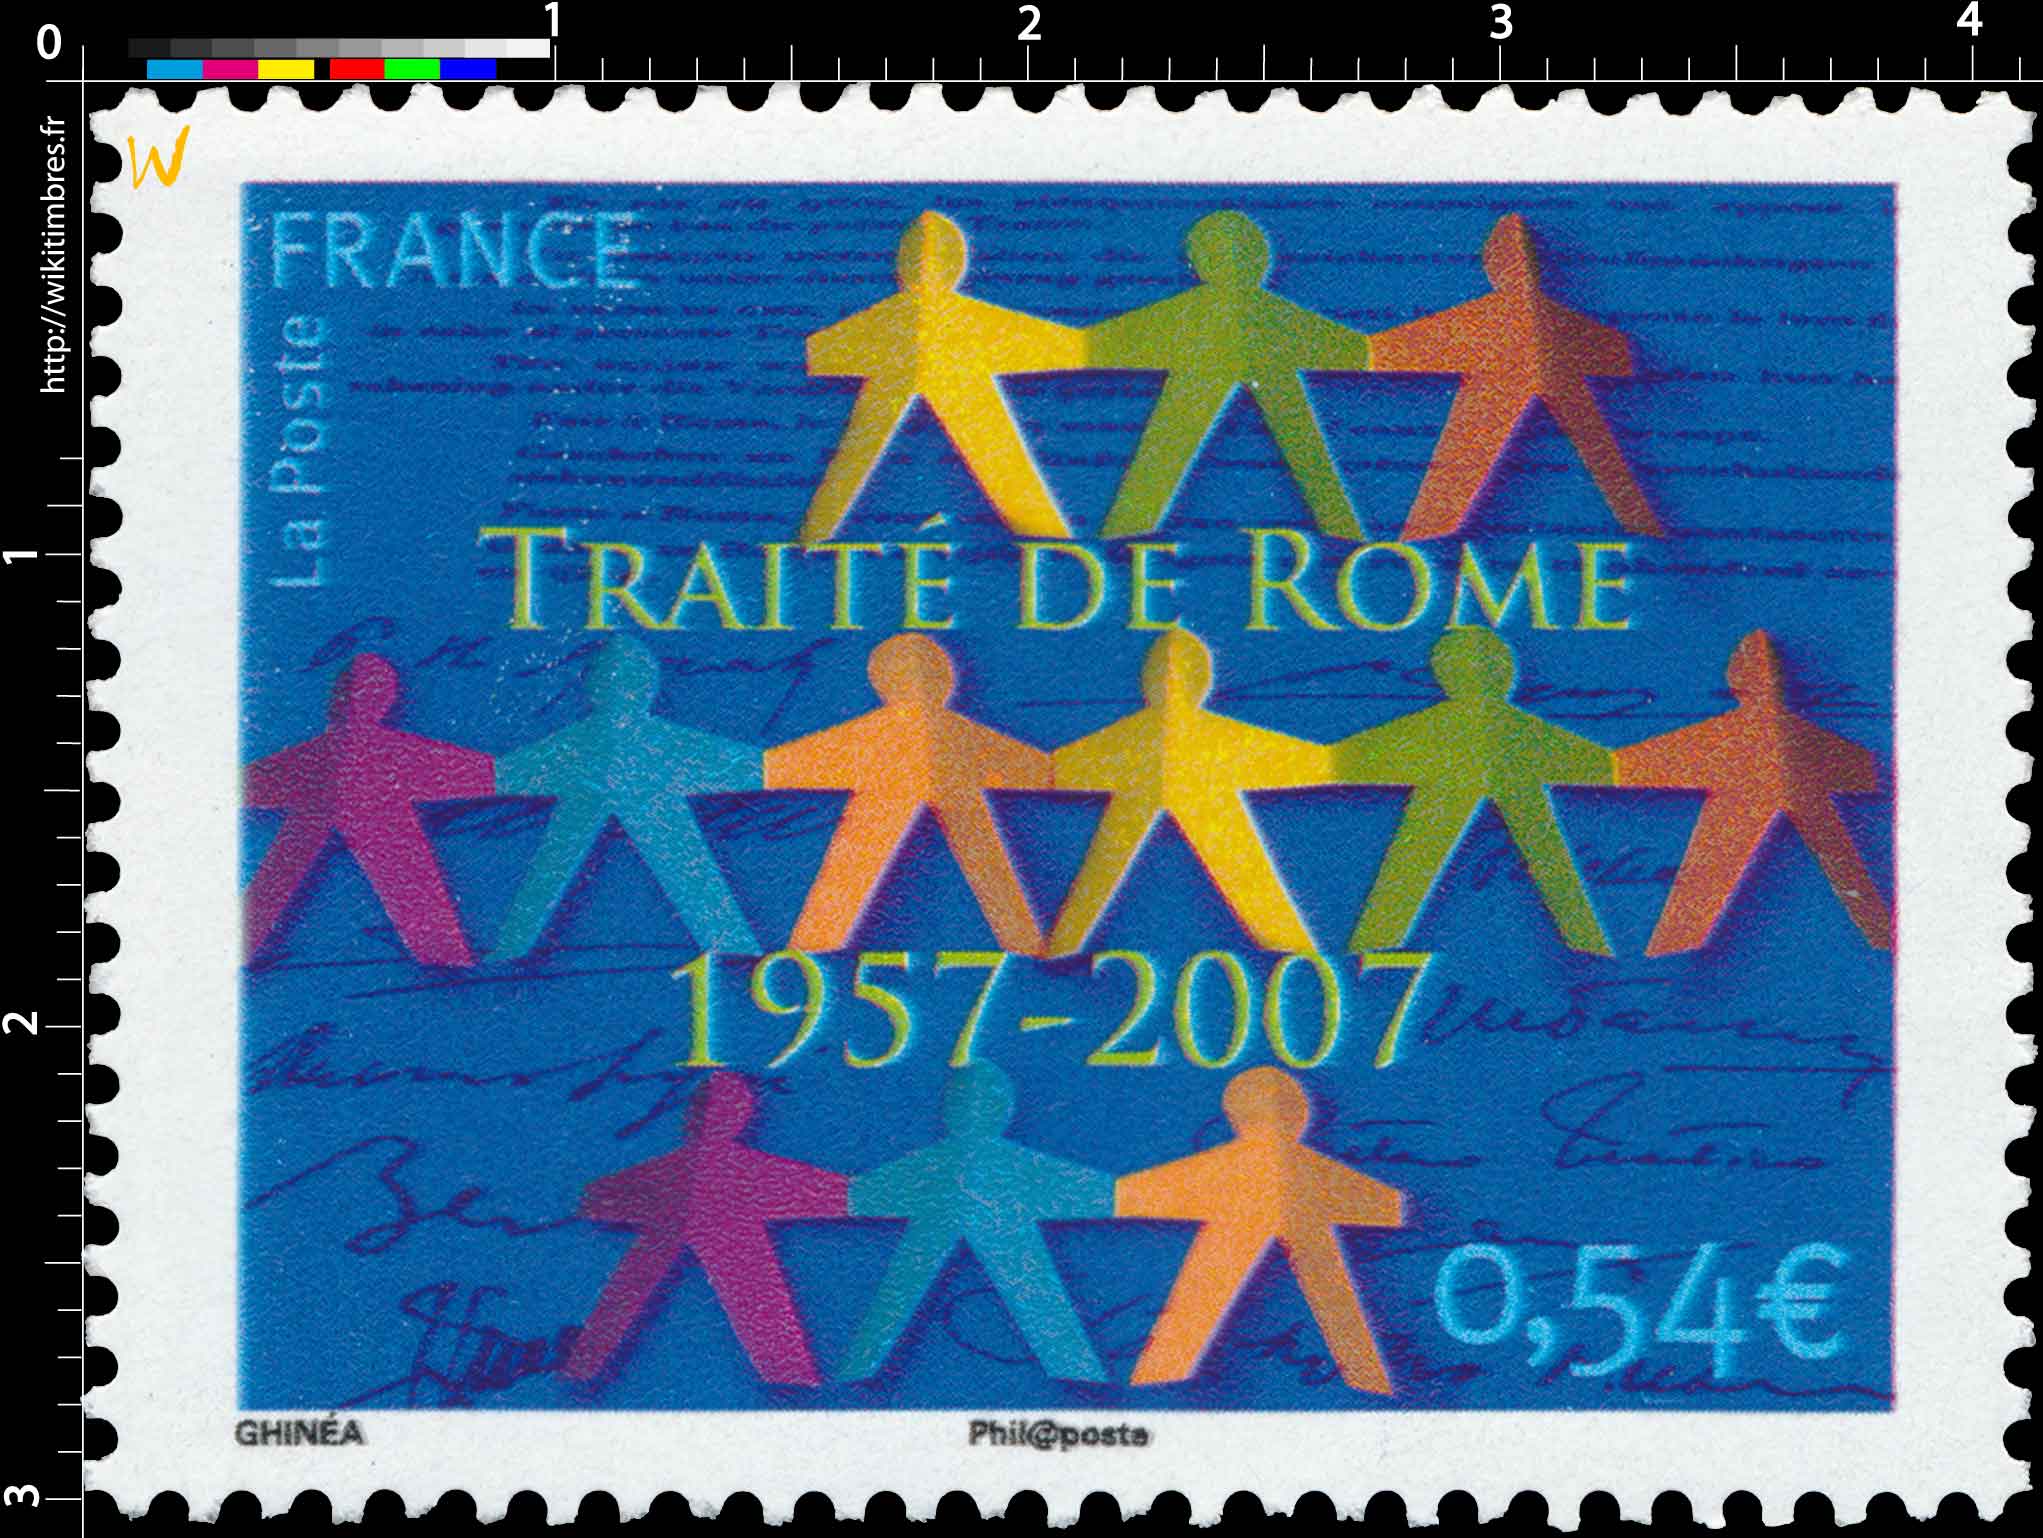 TRAITÉ DE ROME 1957-2007